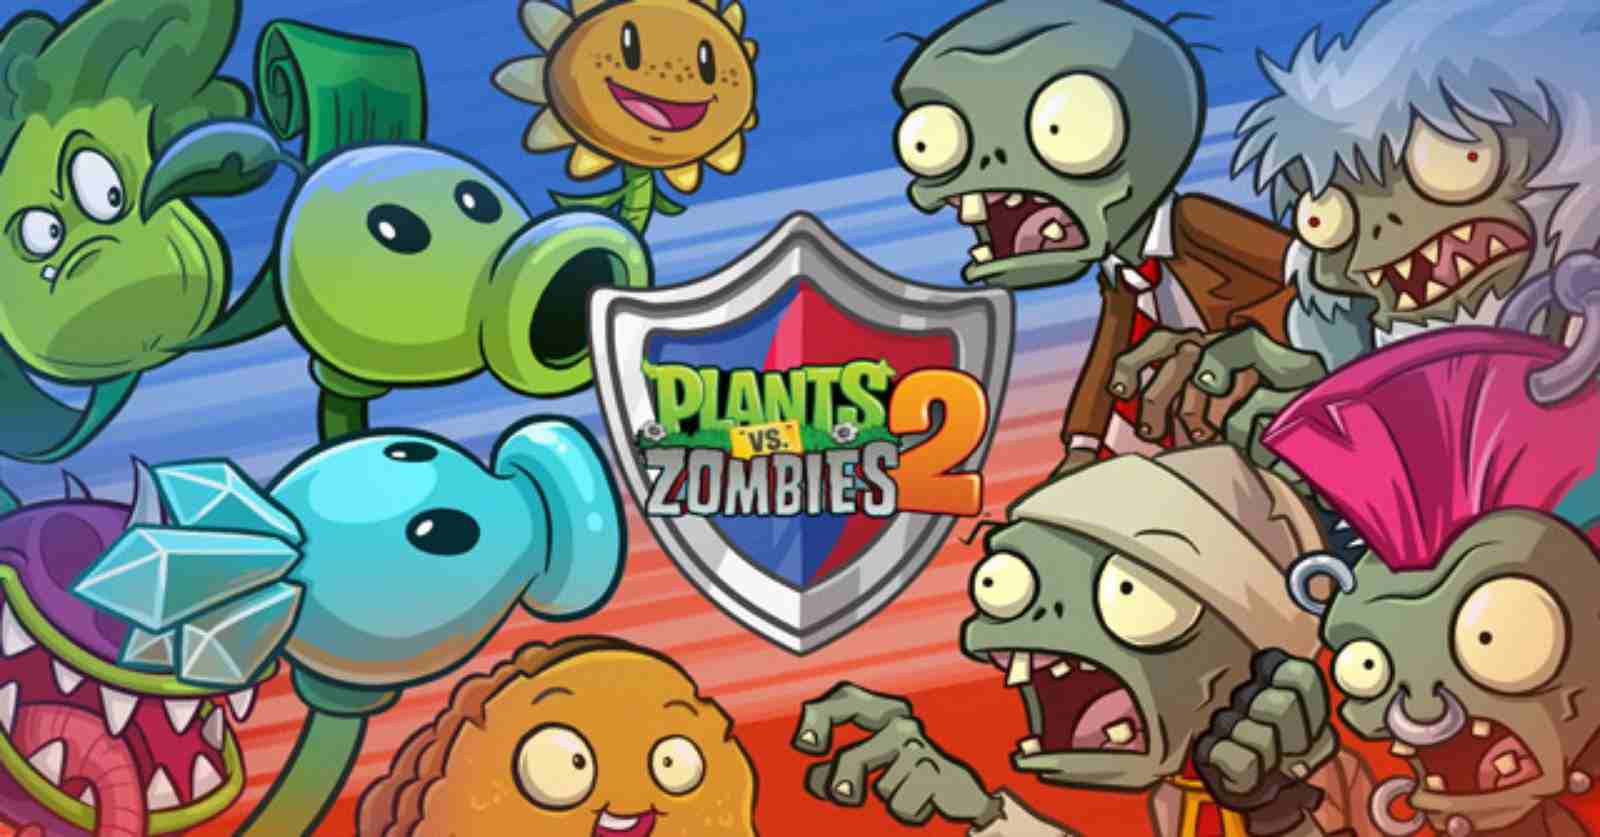 Plants vs Zombies 2 MOD (Menu Pro, Tất Cả Tính Năng, Cấp Độ Tối Đa) APK 11.4.1